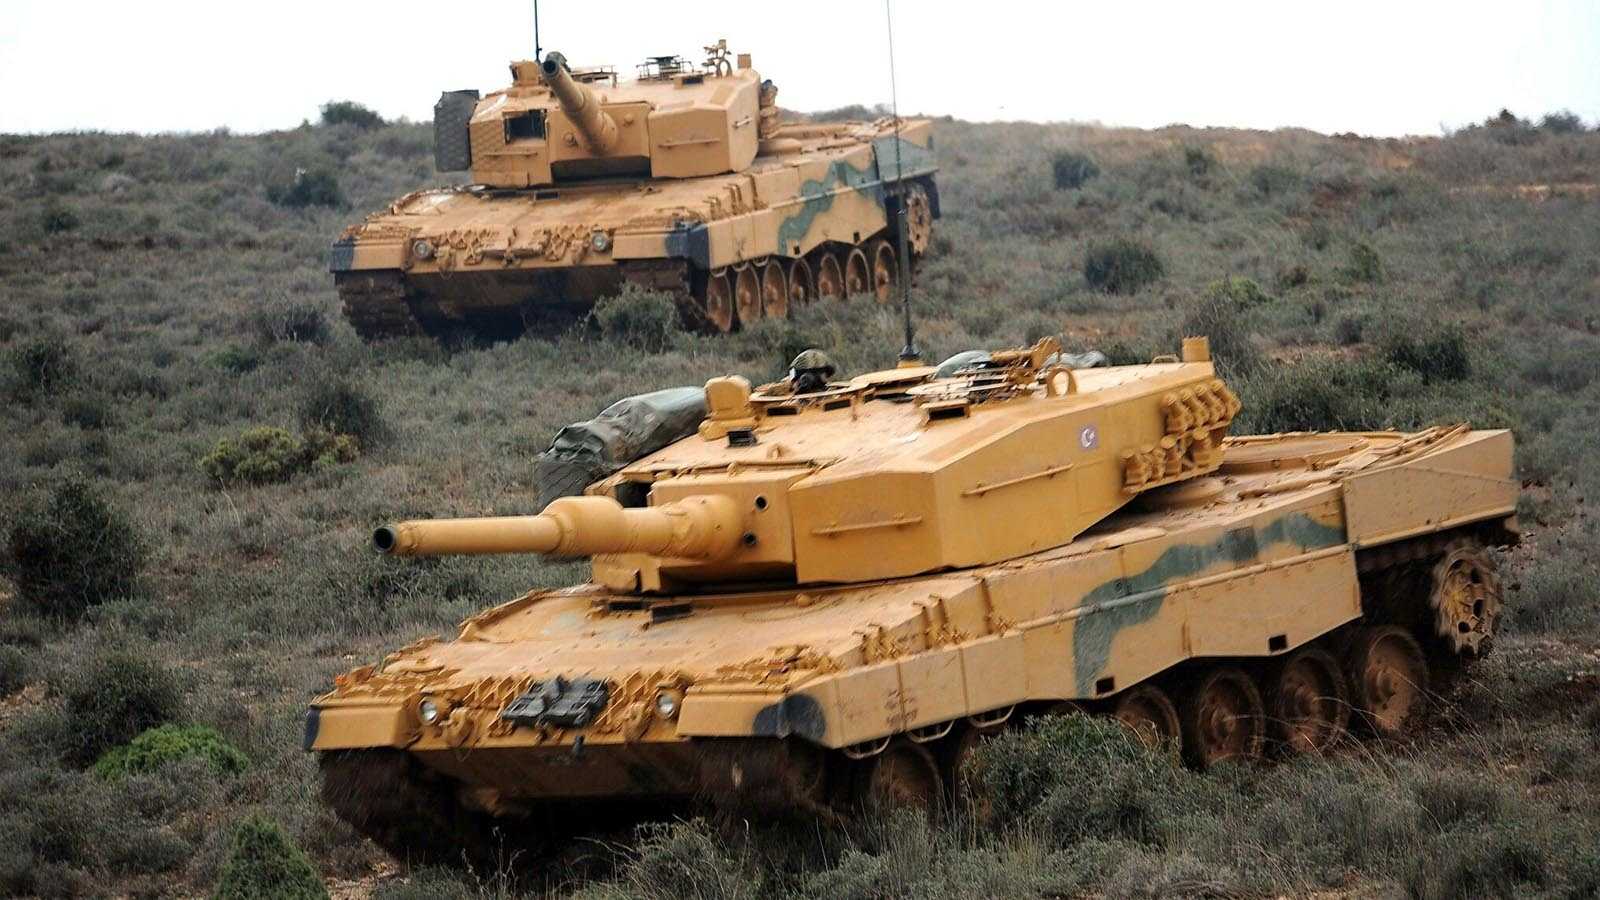 Tanklarda Modernizasyonun Önemi ve Türk Tankları - Stratejik Ortak